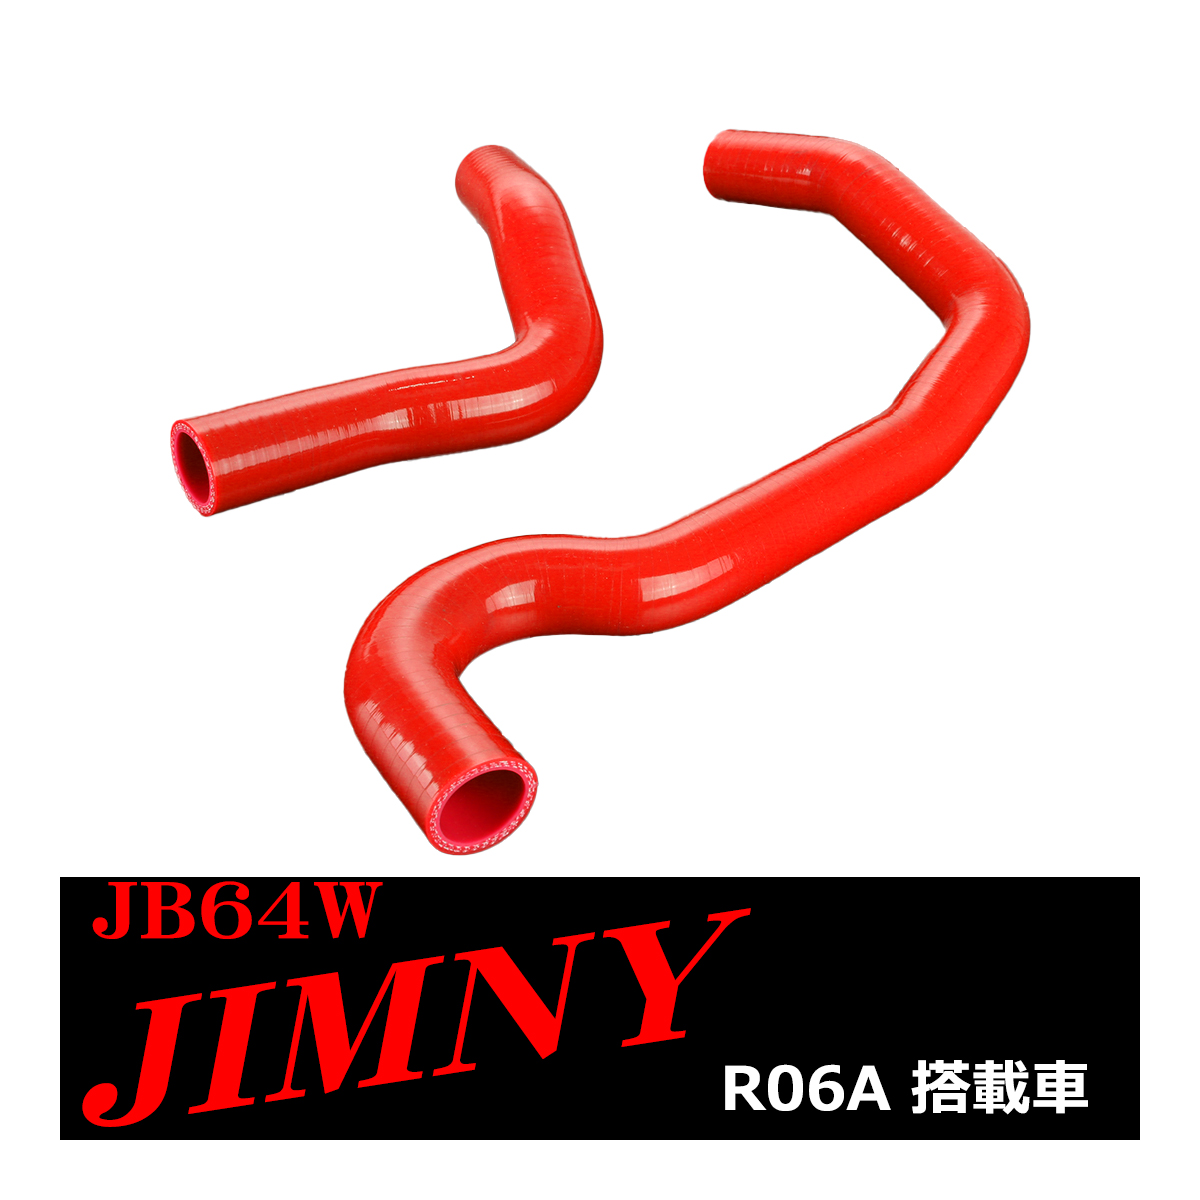 JB64W ジムニー シリコンホースセット ラジエーターホース スズキ 3PLY レッド SZ157-R